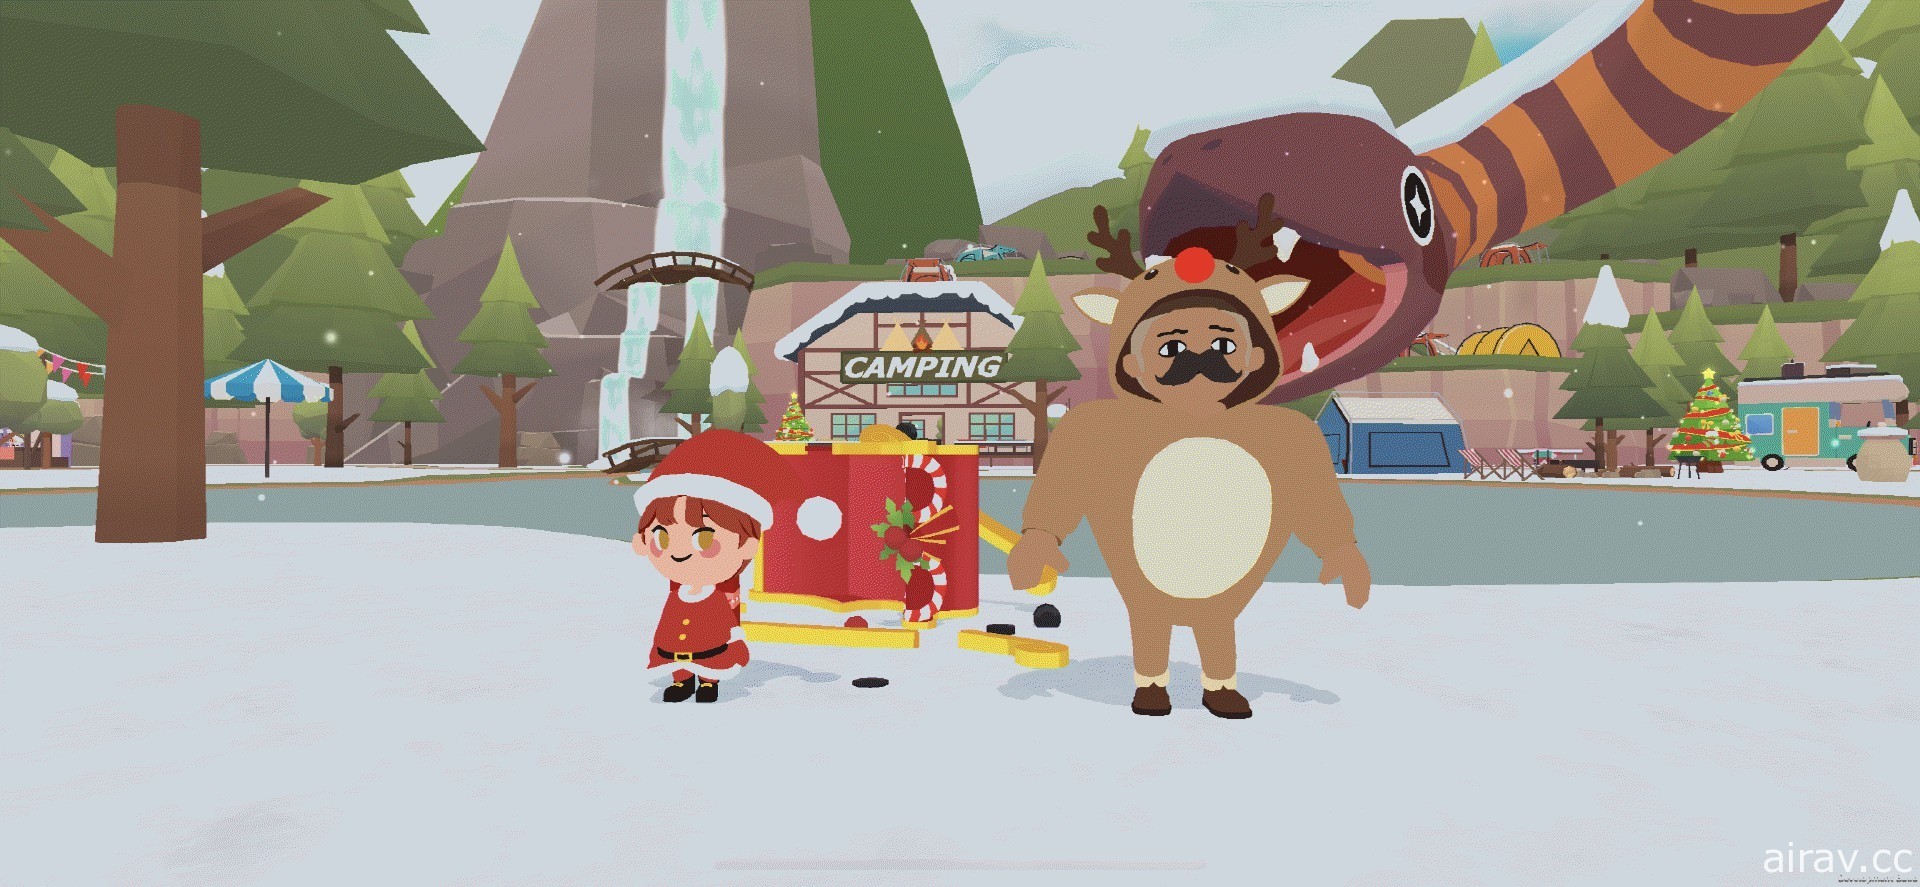 《天天玩乐园》推出圣诞节大型改版 多种圣诞节风格道具登场